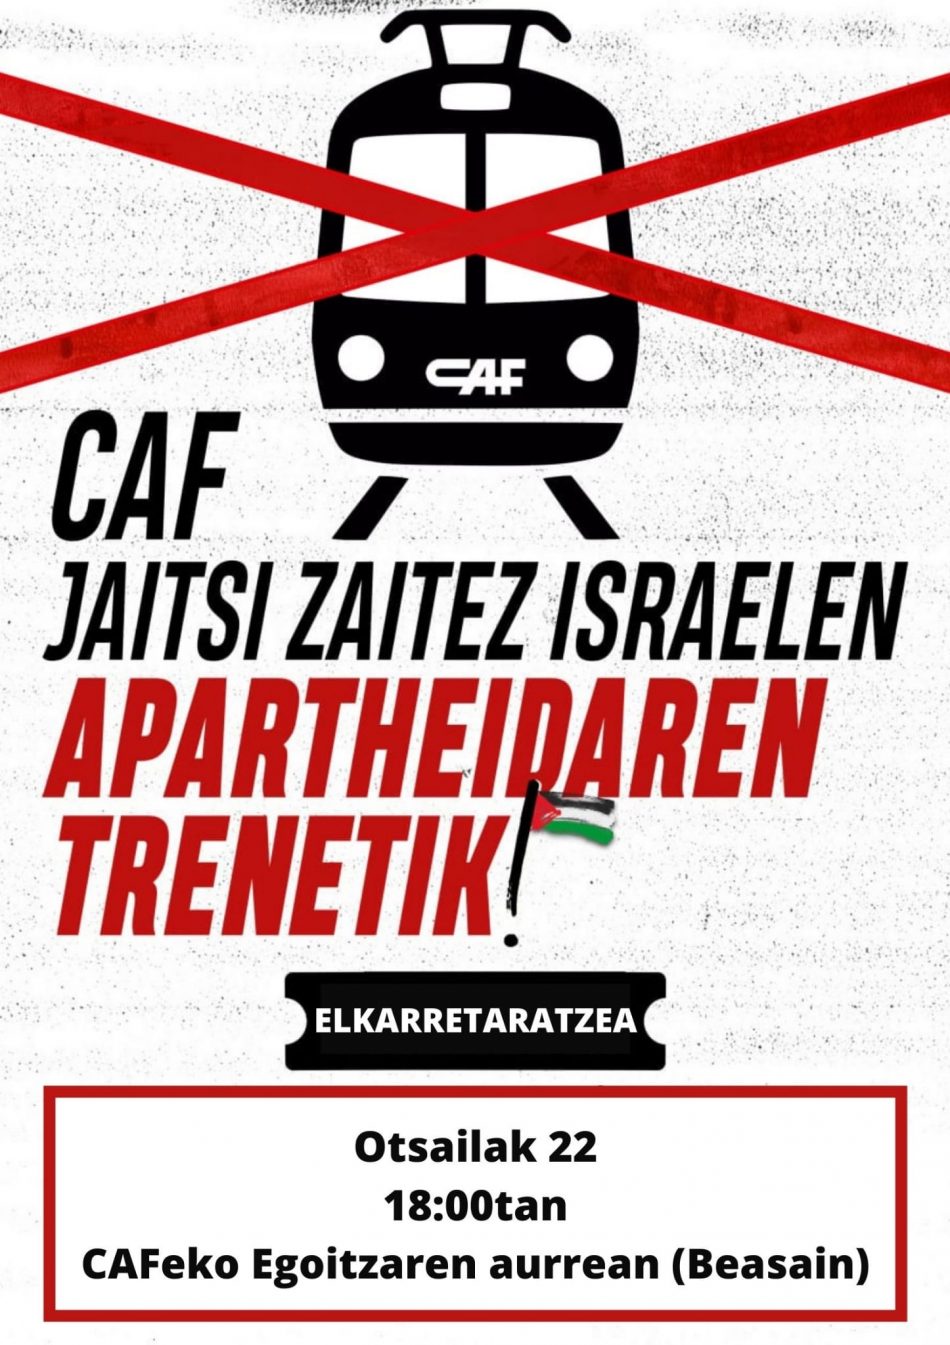 CAF continúa violando el Derecho Internacional en Territorio Ocupado Palestino con la ampliación del tranvía en Jerusalén